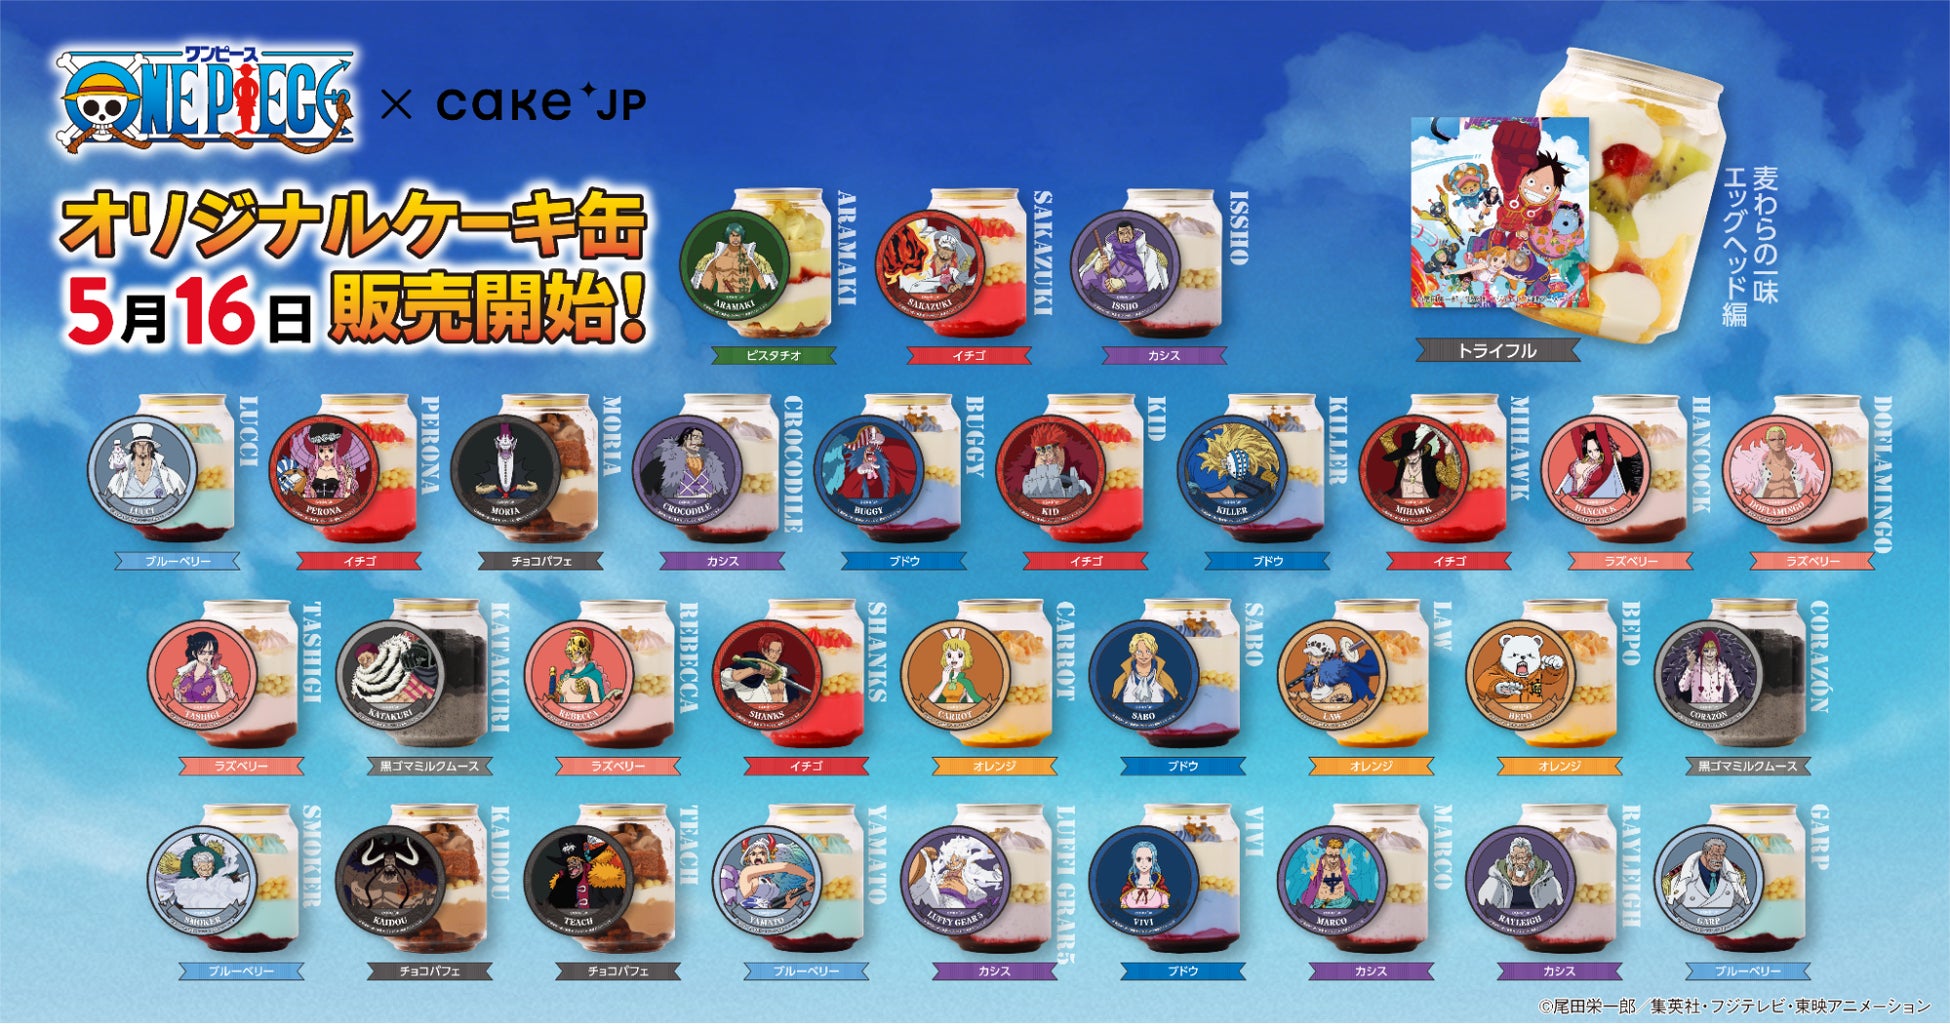 TVアニメ『ONE PIECE』×Cake.jpコラボ 32種類のオリジナルケーキ缶を5月16日より発売